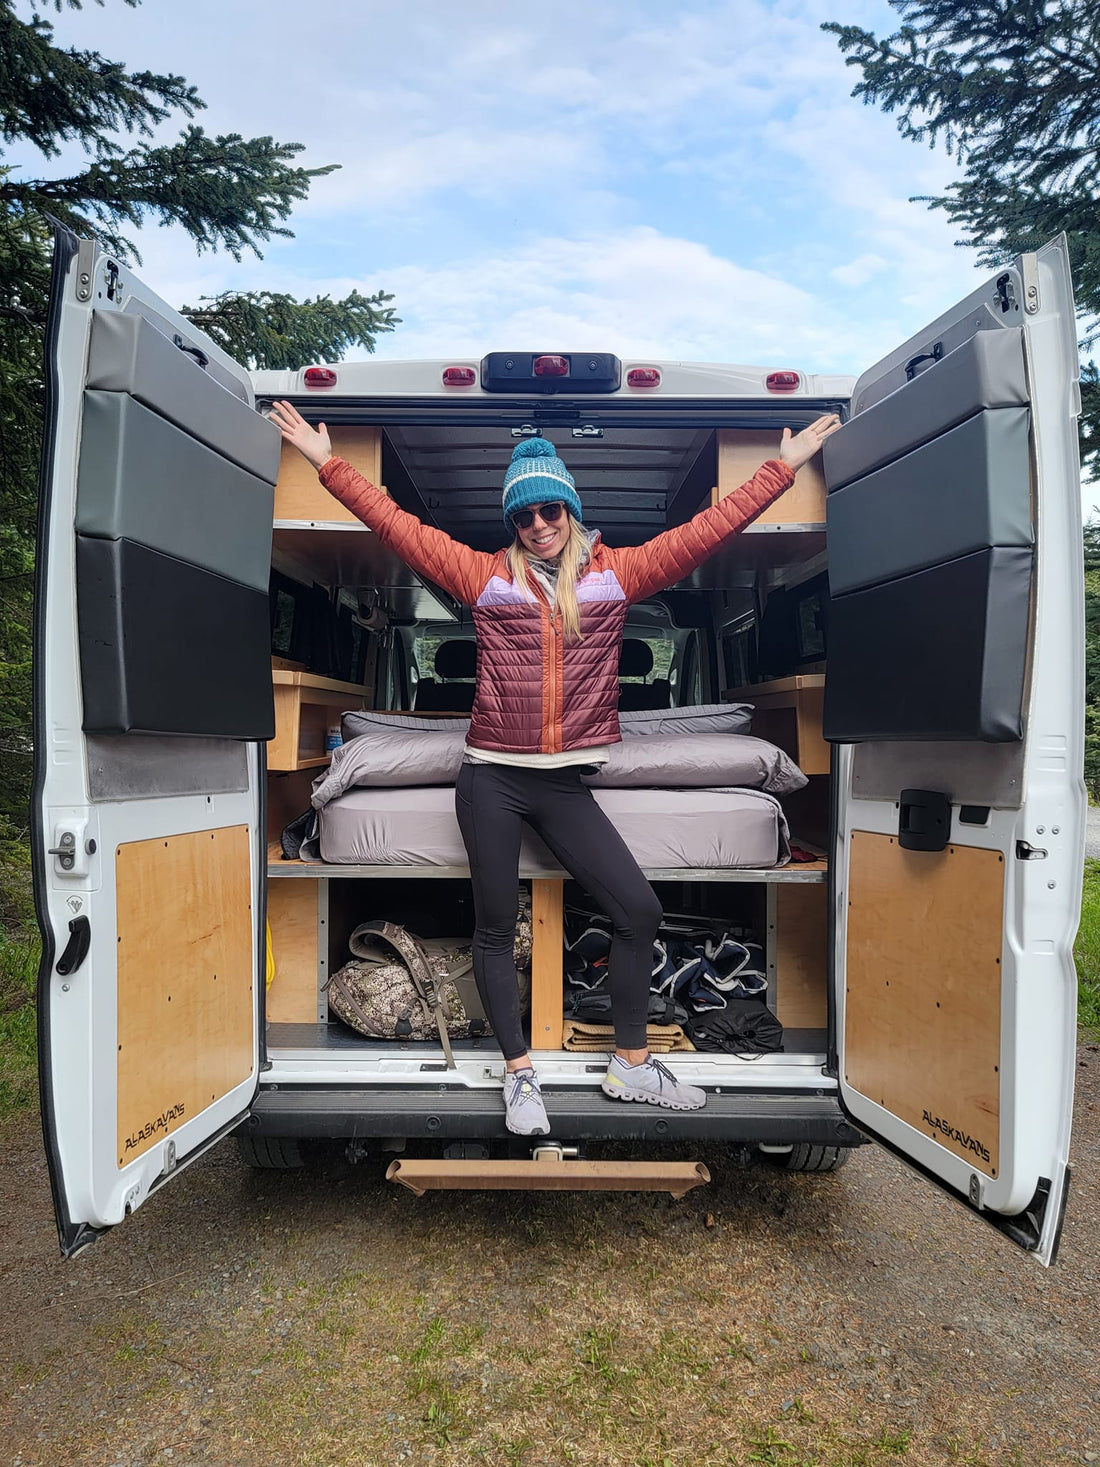 Camping Alaska - in a Camper Van!